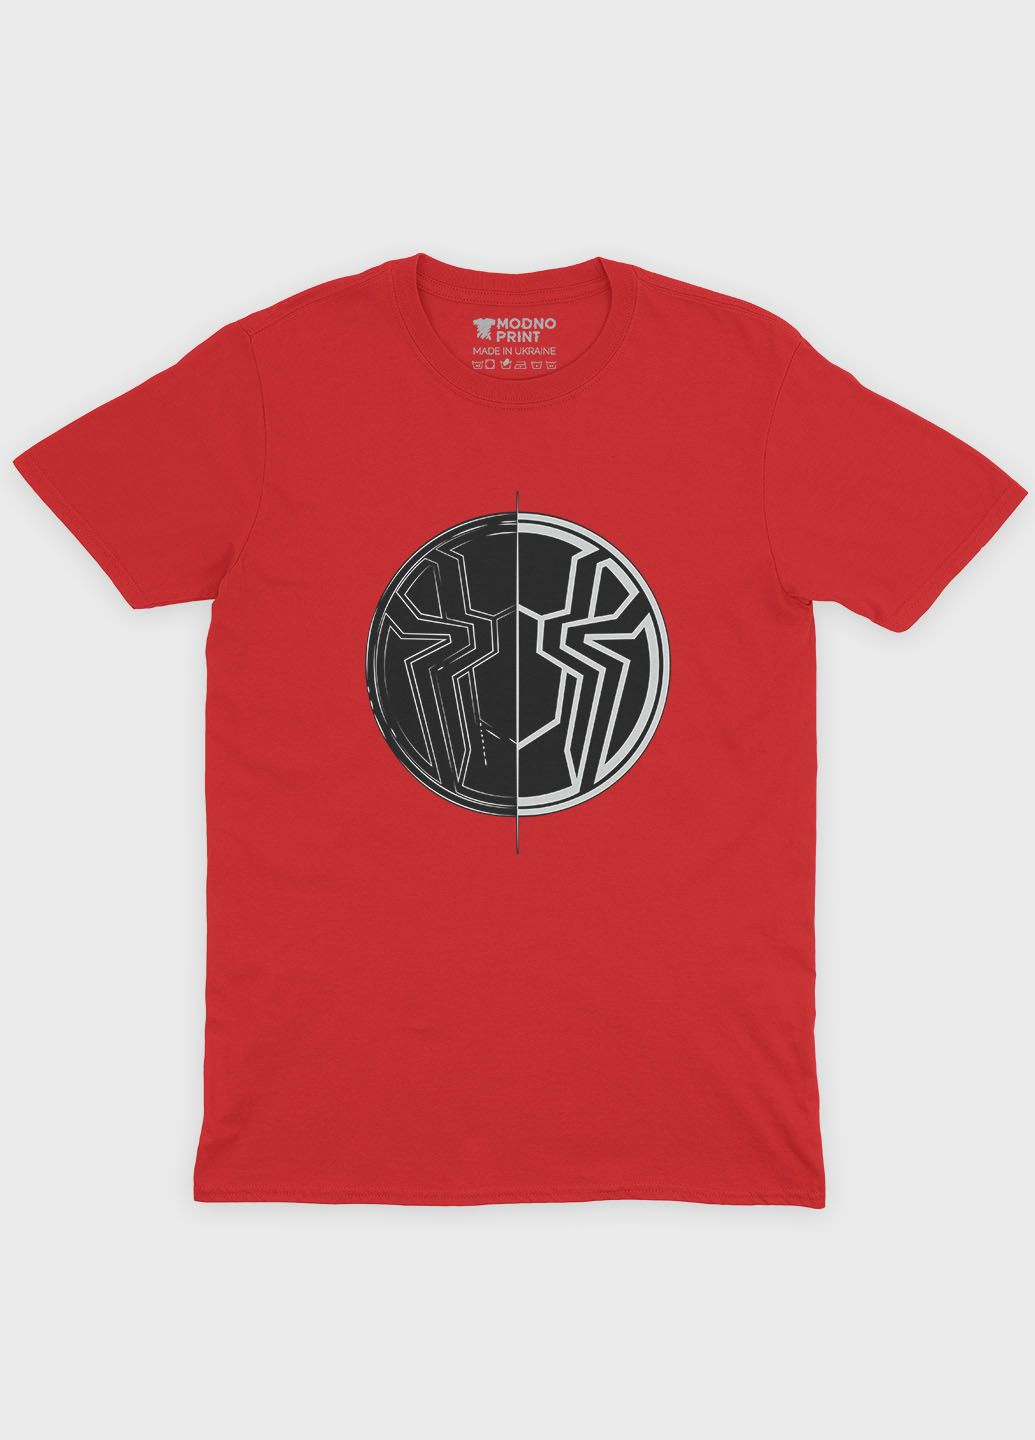 Красная демисезонная футболка для мальчика с принтом супергероя - человек-паук (ts001-1-sre-006-014-089-b) Modno